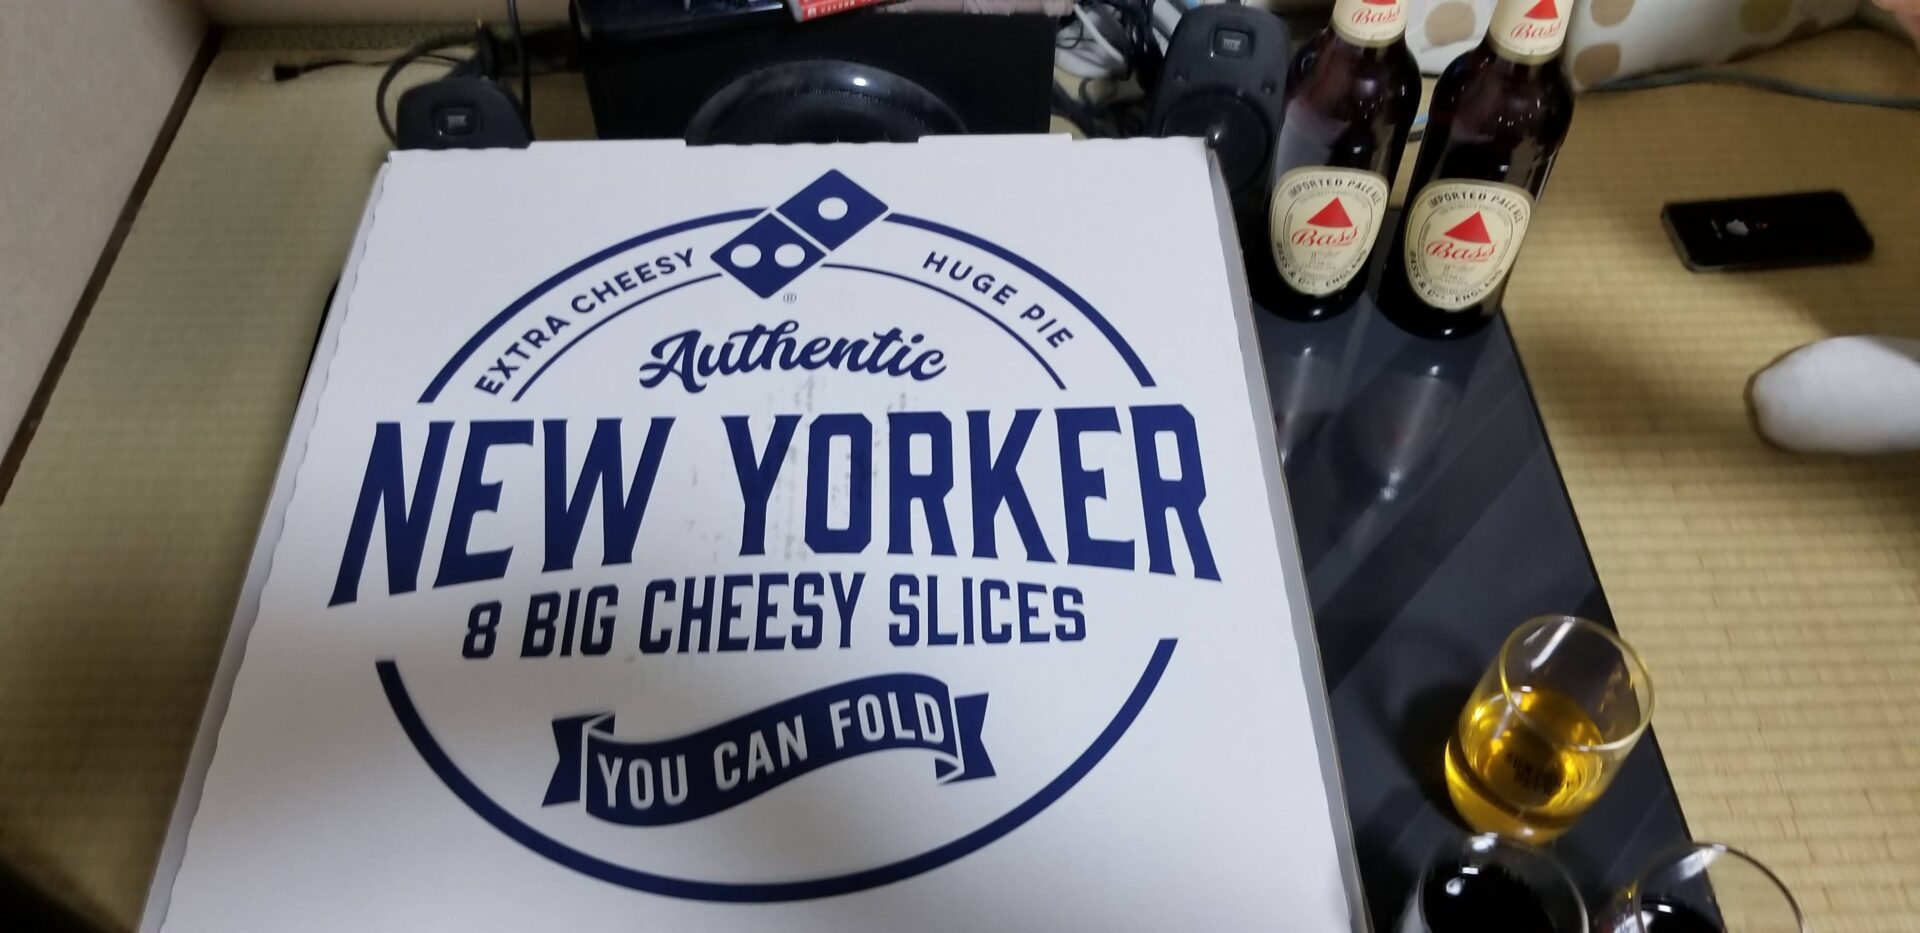 アメリカンサイズピザ「クワトロ・ニューヨーカー」は男のロマン！仲間を呼んで早速ピザパーティー。